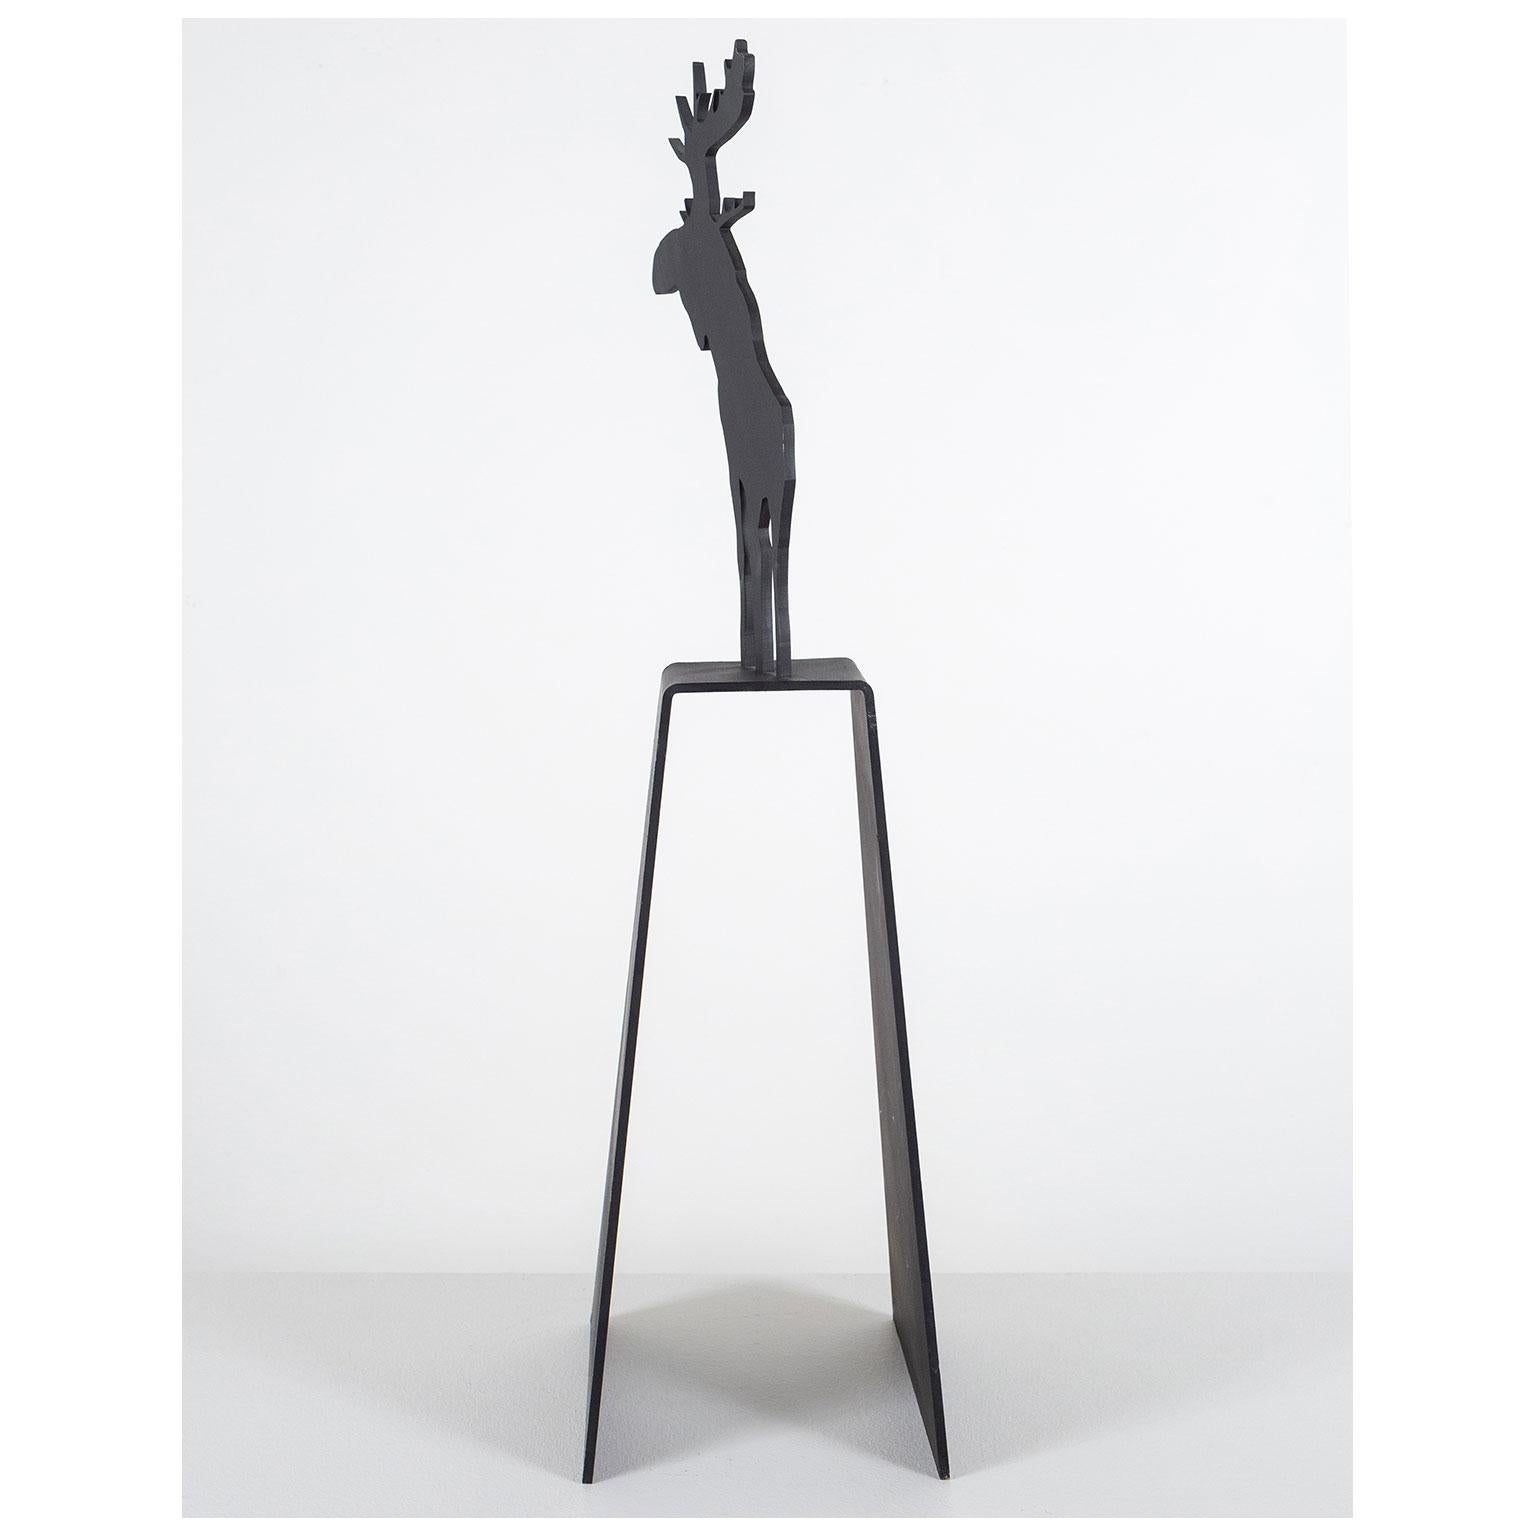 Mooseamour 26 - Contemporain Sculpture par Charles Pachter